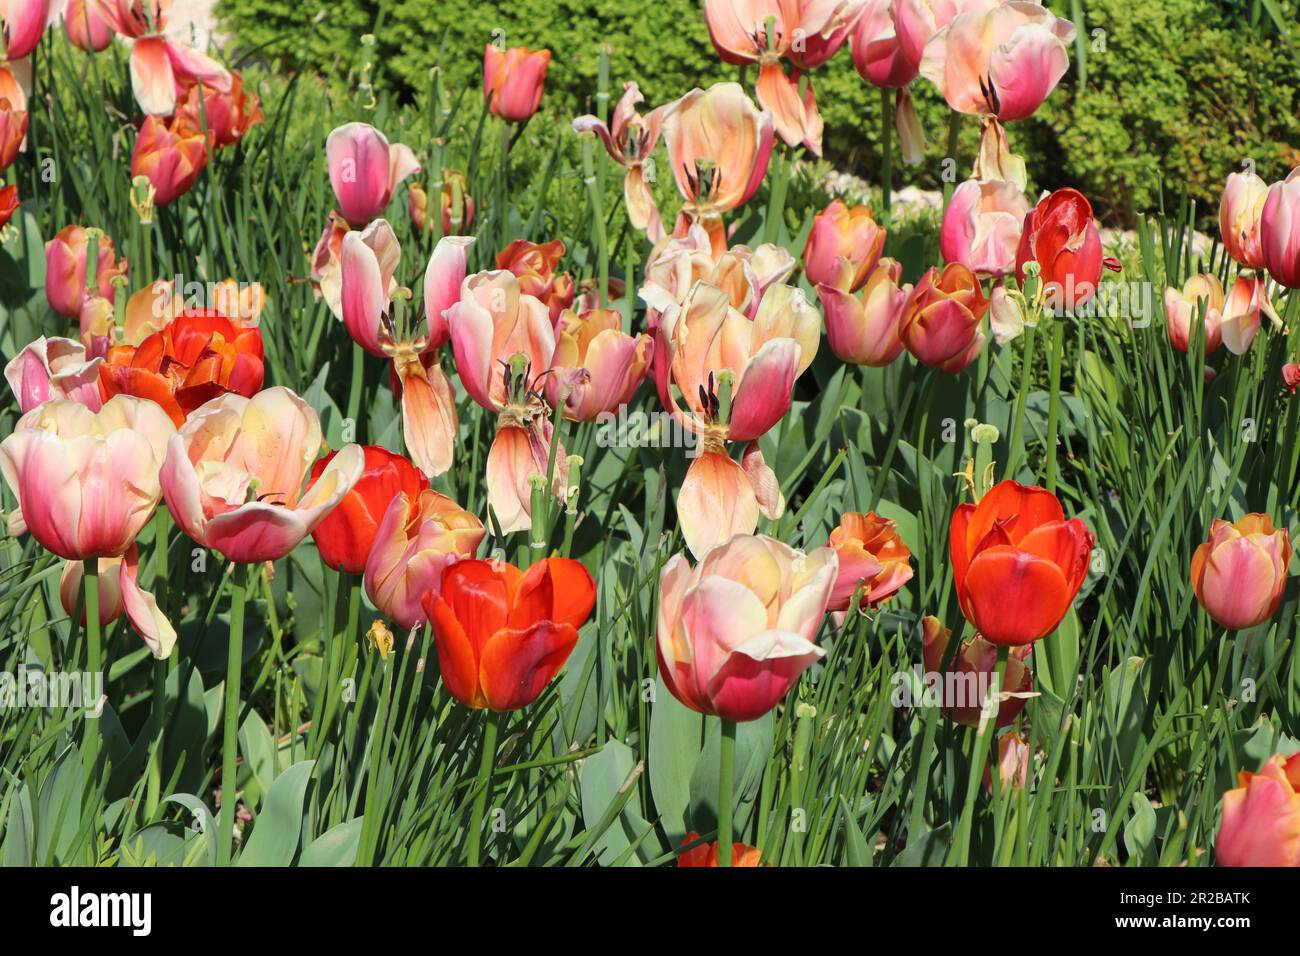 groupe de tulipes roses et rouges, gros plan. Photo de haute qualité Banque D'Images